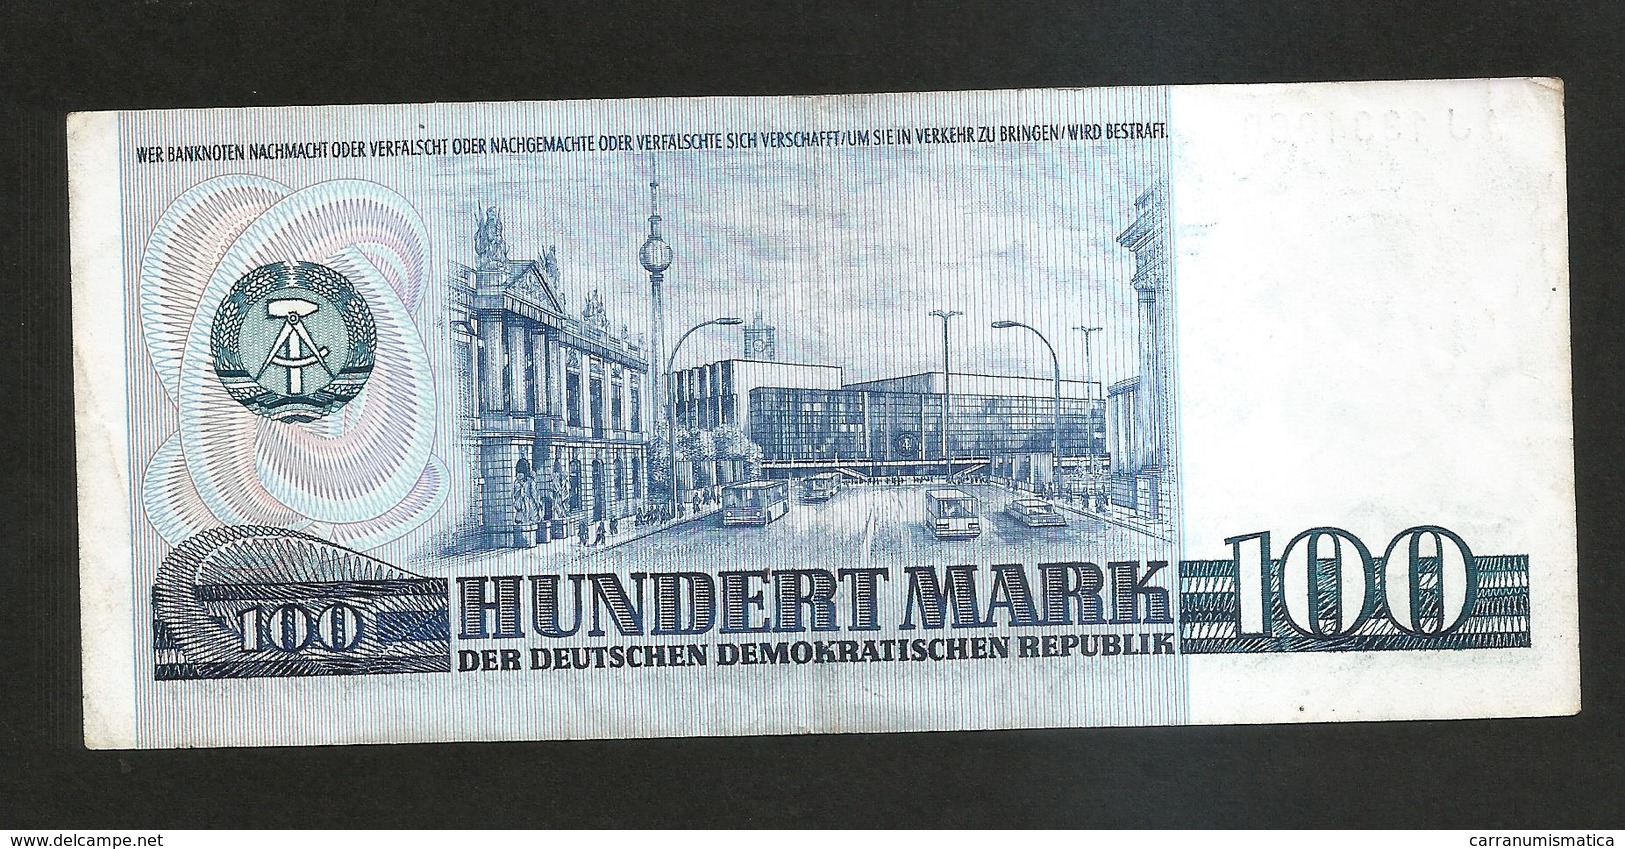 DEUTSCHLAND - Staatsbank Der DDR - 100 MARK (1975) K. MARX - 100 Mark